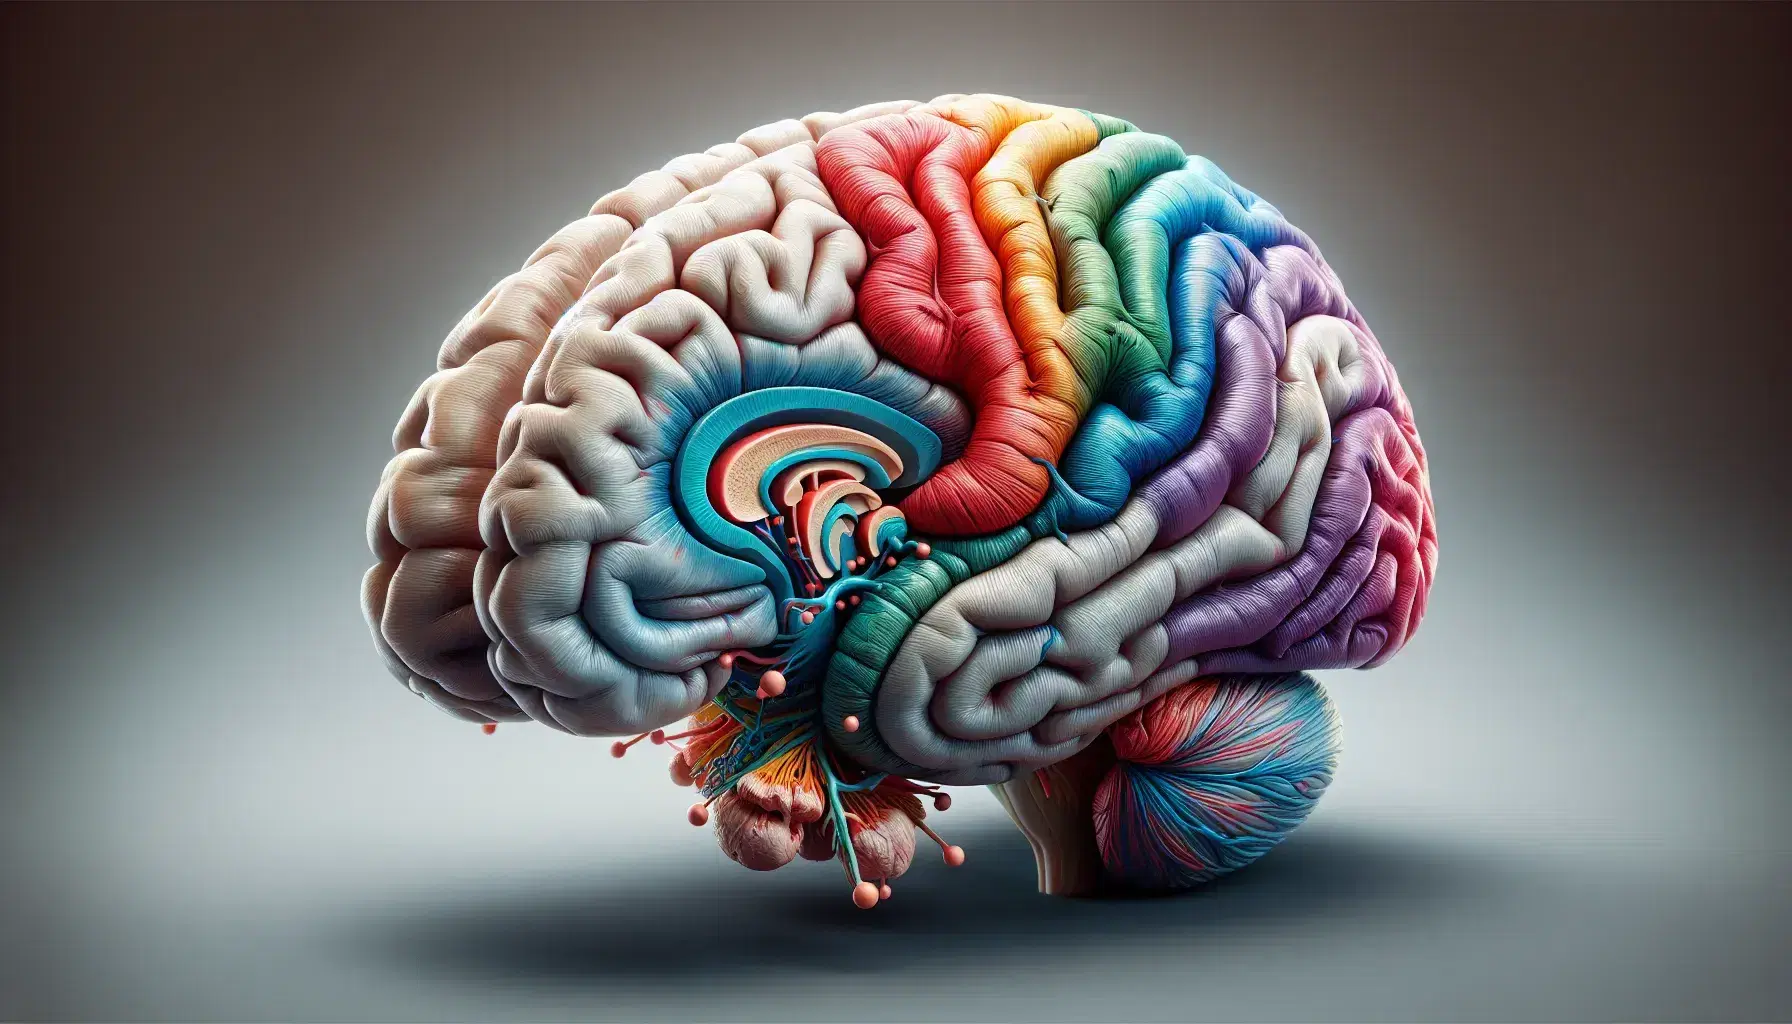 Representación anatómica tridimensional y a color del cerebro humano, destacando el sistema límbico con el hipocampo, la amígdala y el tálamo en tonos vivos.